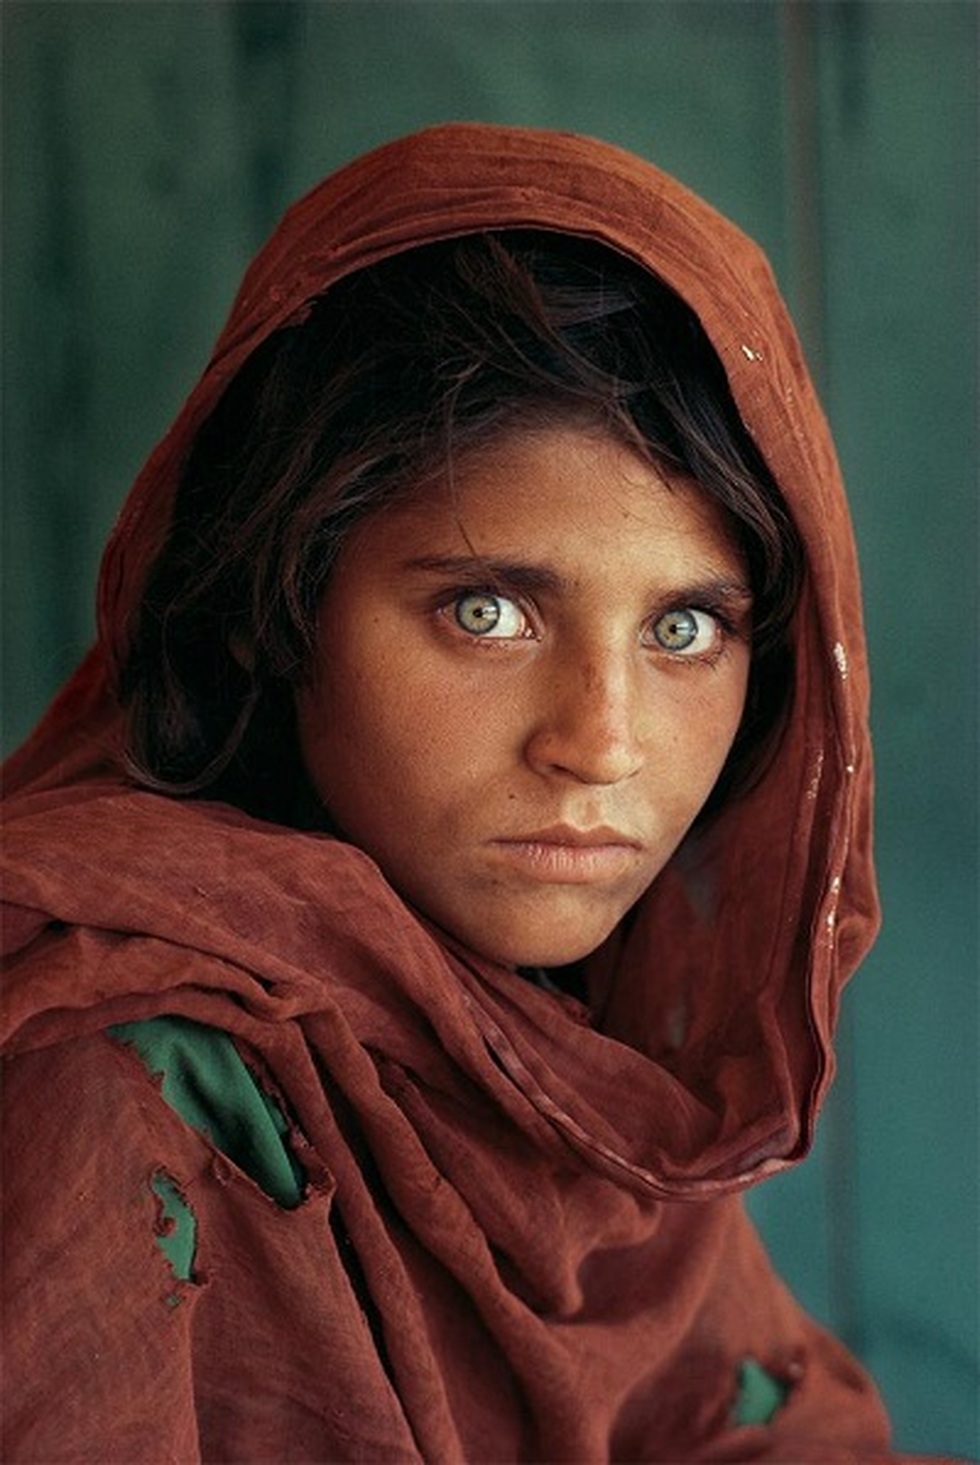 Cô gái Afghanistan sống tại Ý: Cuộc đời cô gái nổi tiếng trong nhiếp ảnh - 2